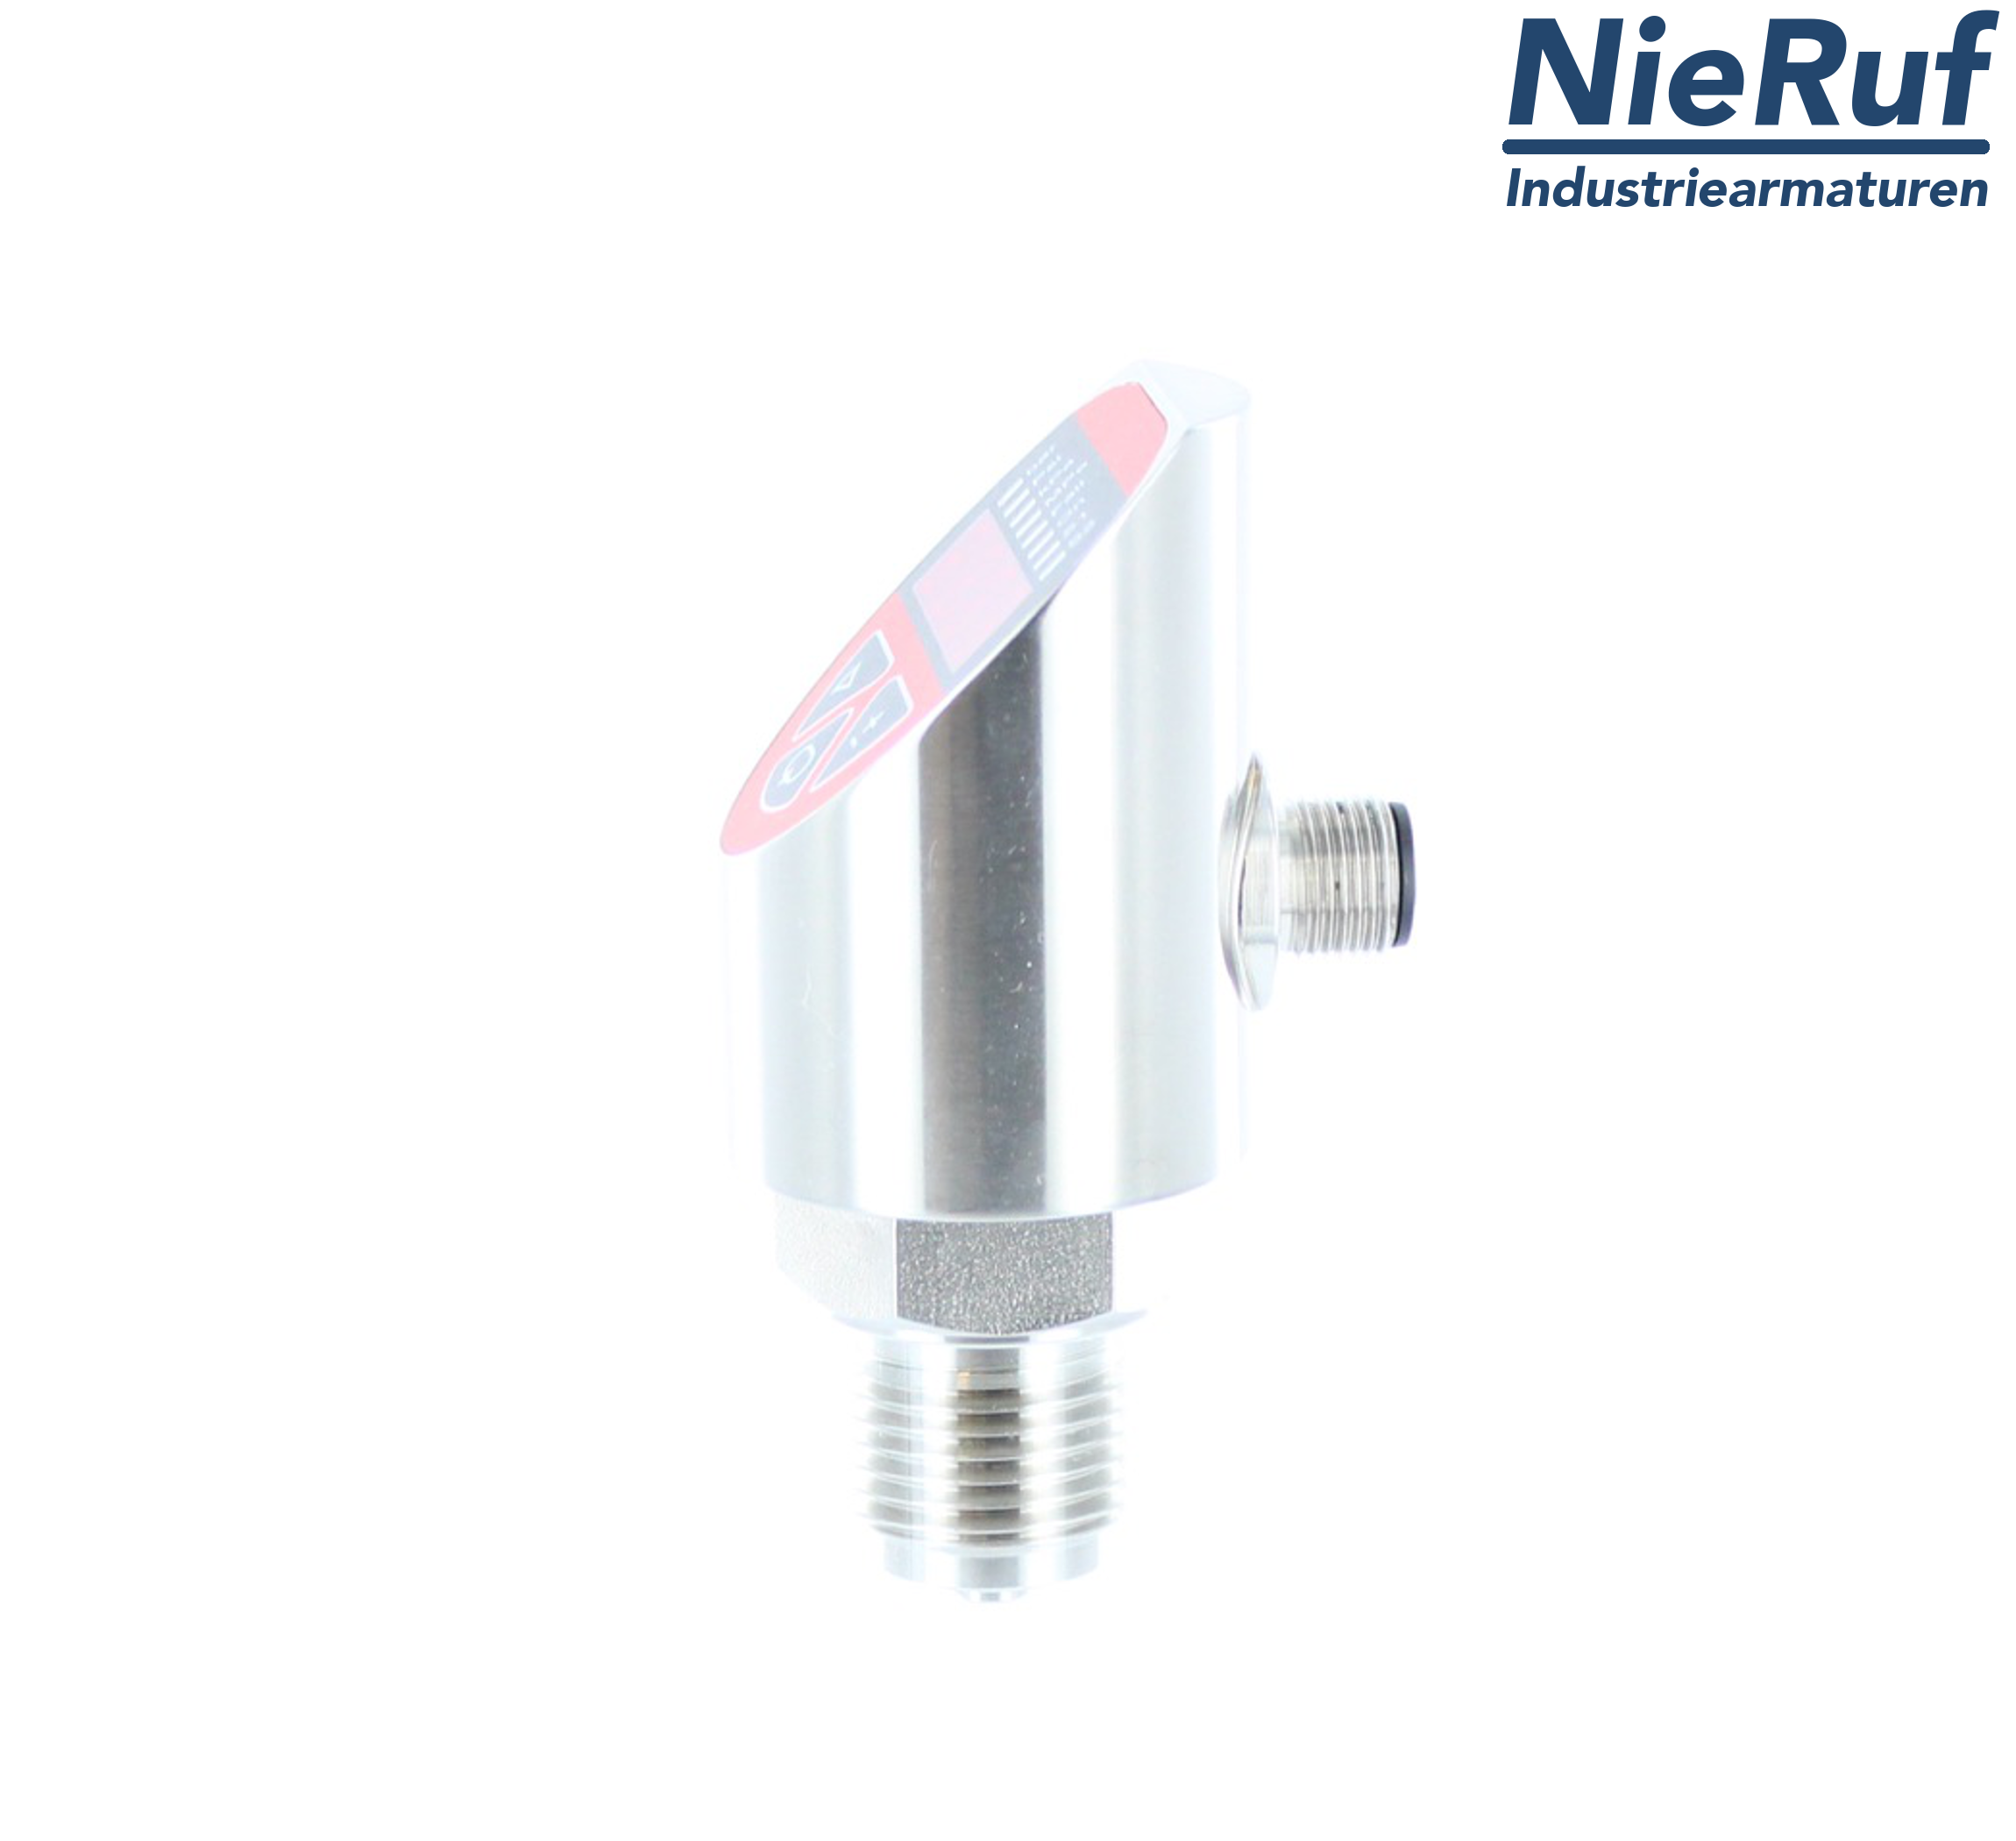 digital pressure sensor G 1/2" B IB 5-wire: 2xPNP, 1x4 - 20mA FPM 0,0 - 320,0 bar